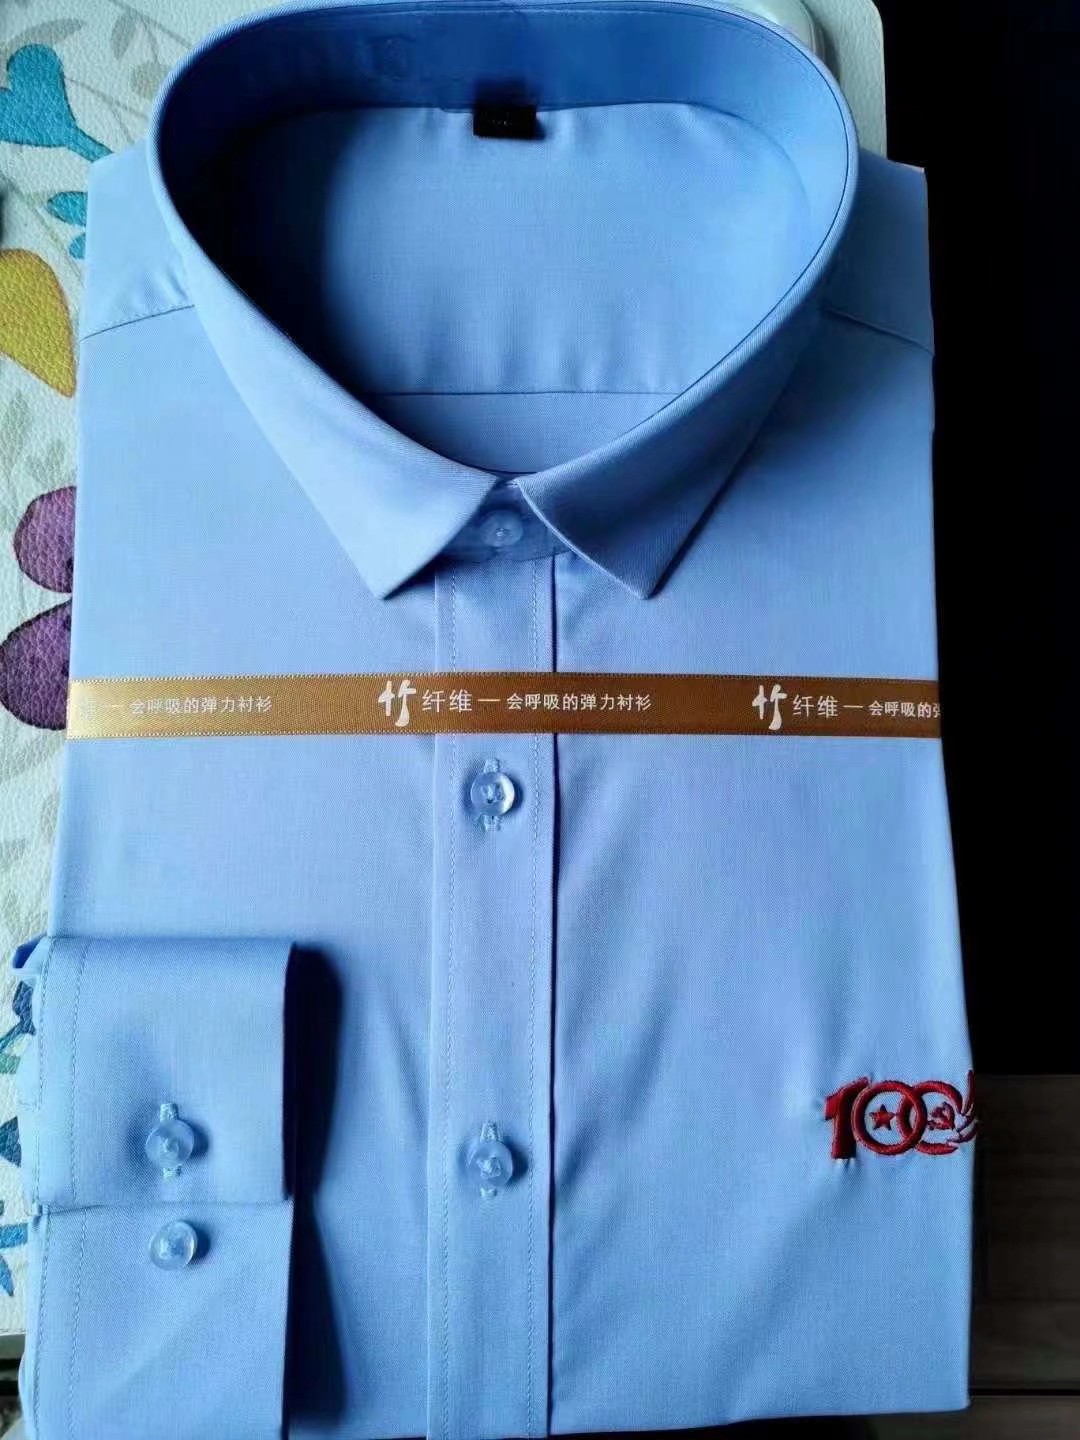 梅州衬衫工作服厂家电话 东莞市茶山华升服装设计服务部